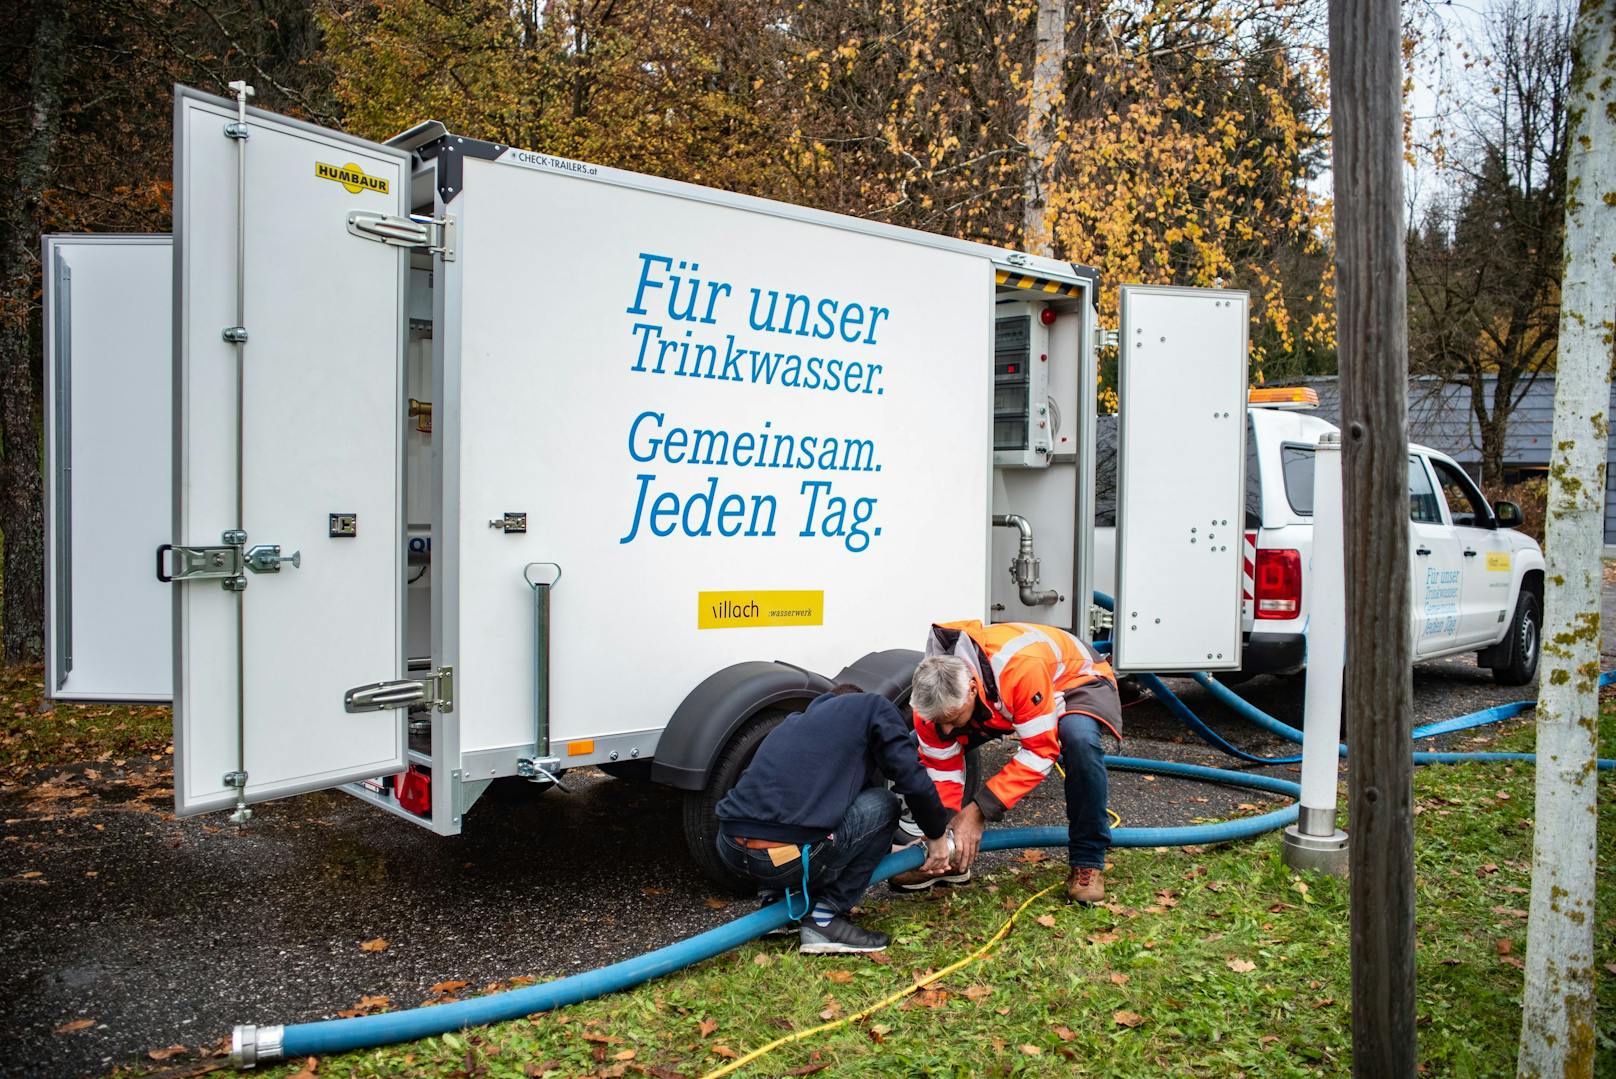 Die Stadt Villach hat ein Wassermobil entwickelt, mit dem im Krisenfall energie- und witterungsunabhängig die Trinkwasserversorgung für einzelne Netzbereiche, Objekte, Gewerbebetriebe usw. aufrechterhalten werden kann.